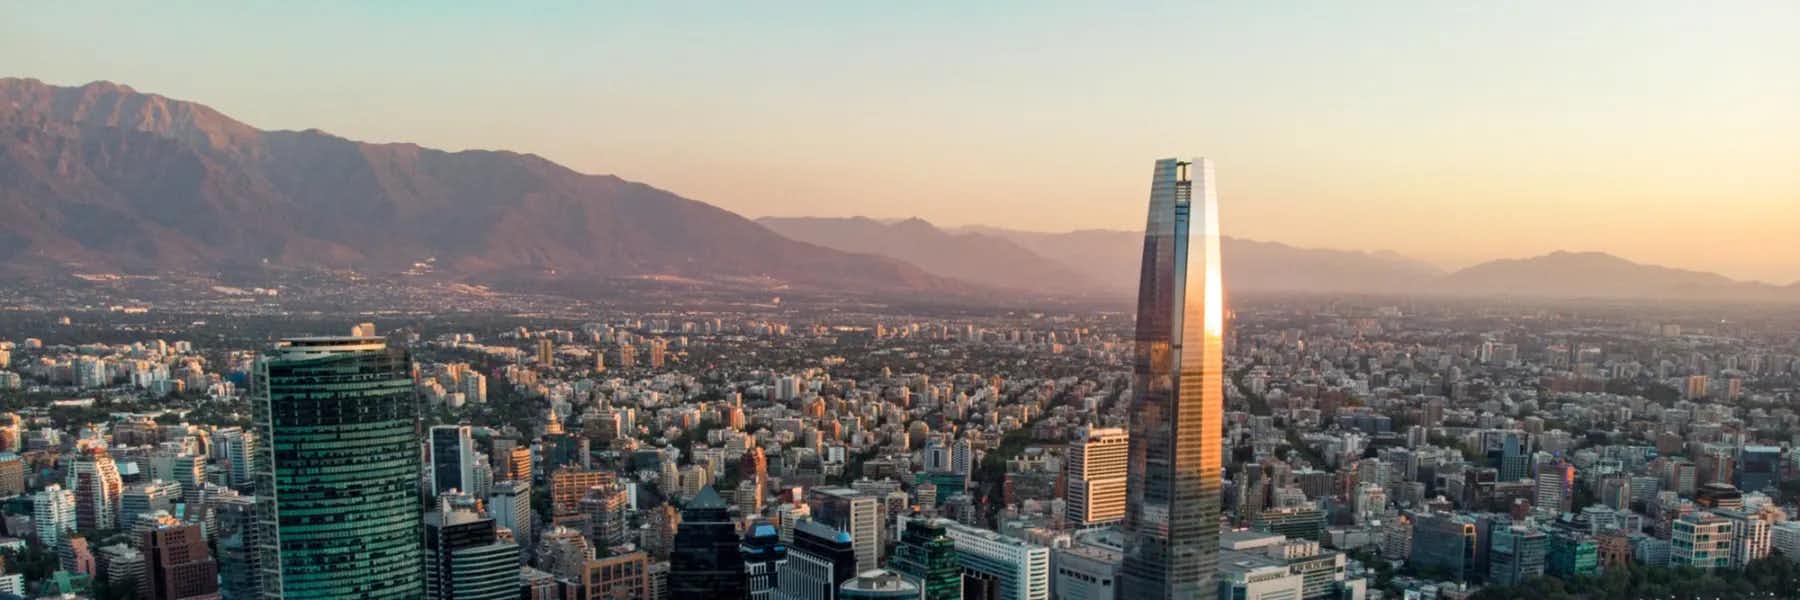 Best Neighborhoods to Live in Santiago, Chile